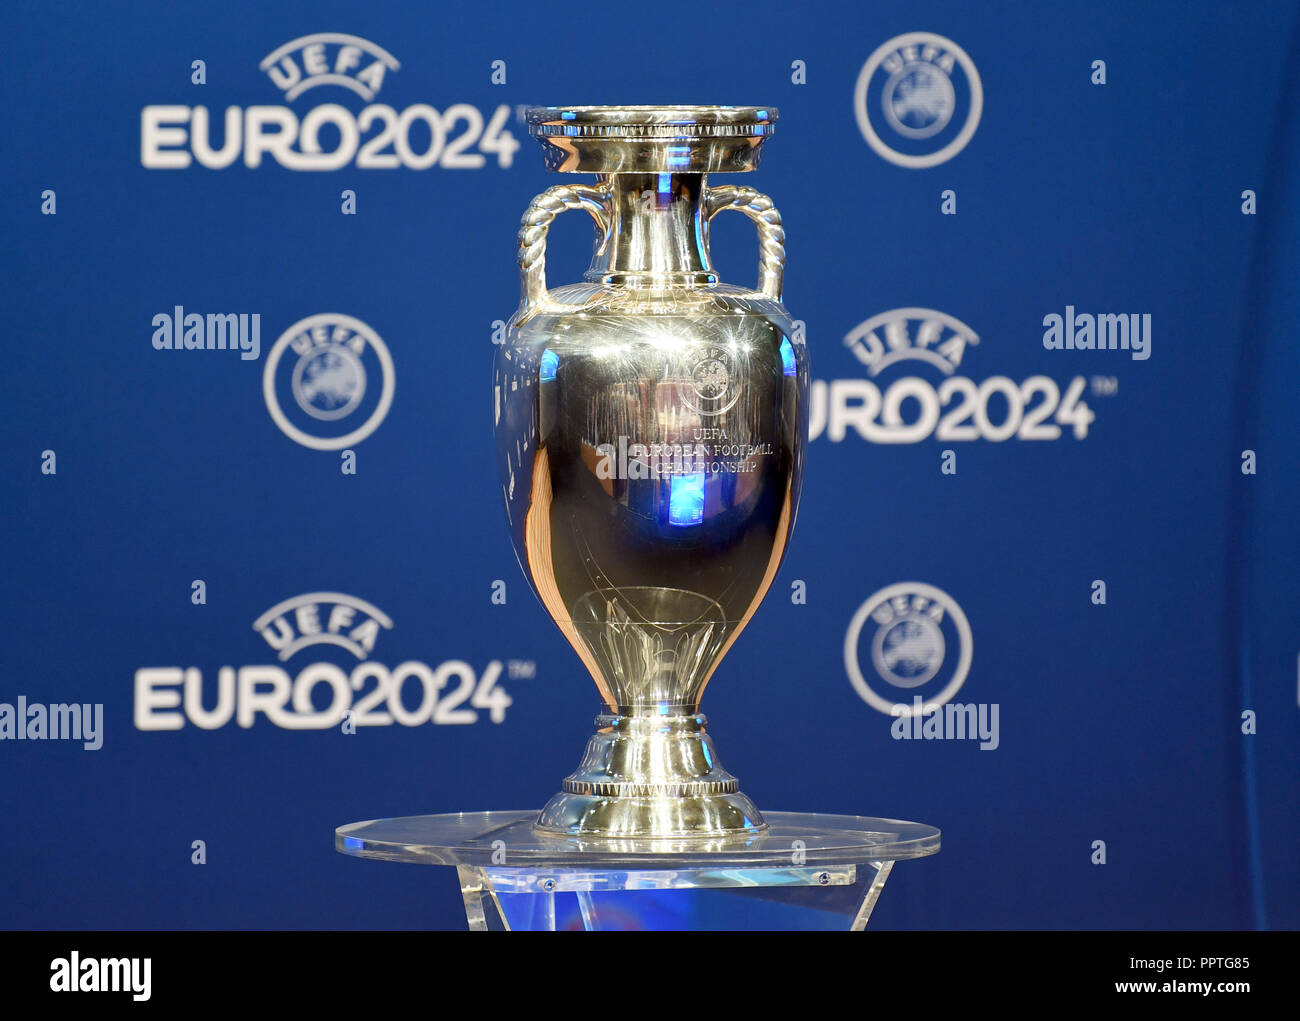 septiembre de 2018, Suiza, Nyon: Fútbol Anuncio del anfitrión del Campeonato de Europa 2024: La Copa de Europa en un pedestal durante la ceremonia de anuncio la Eurocopa 2024.